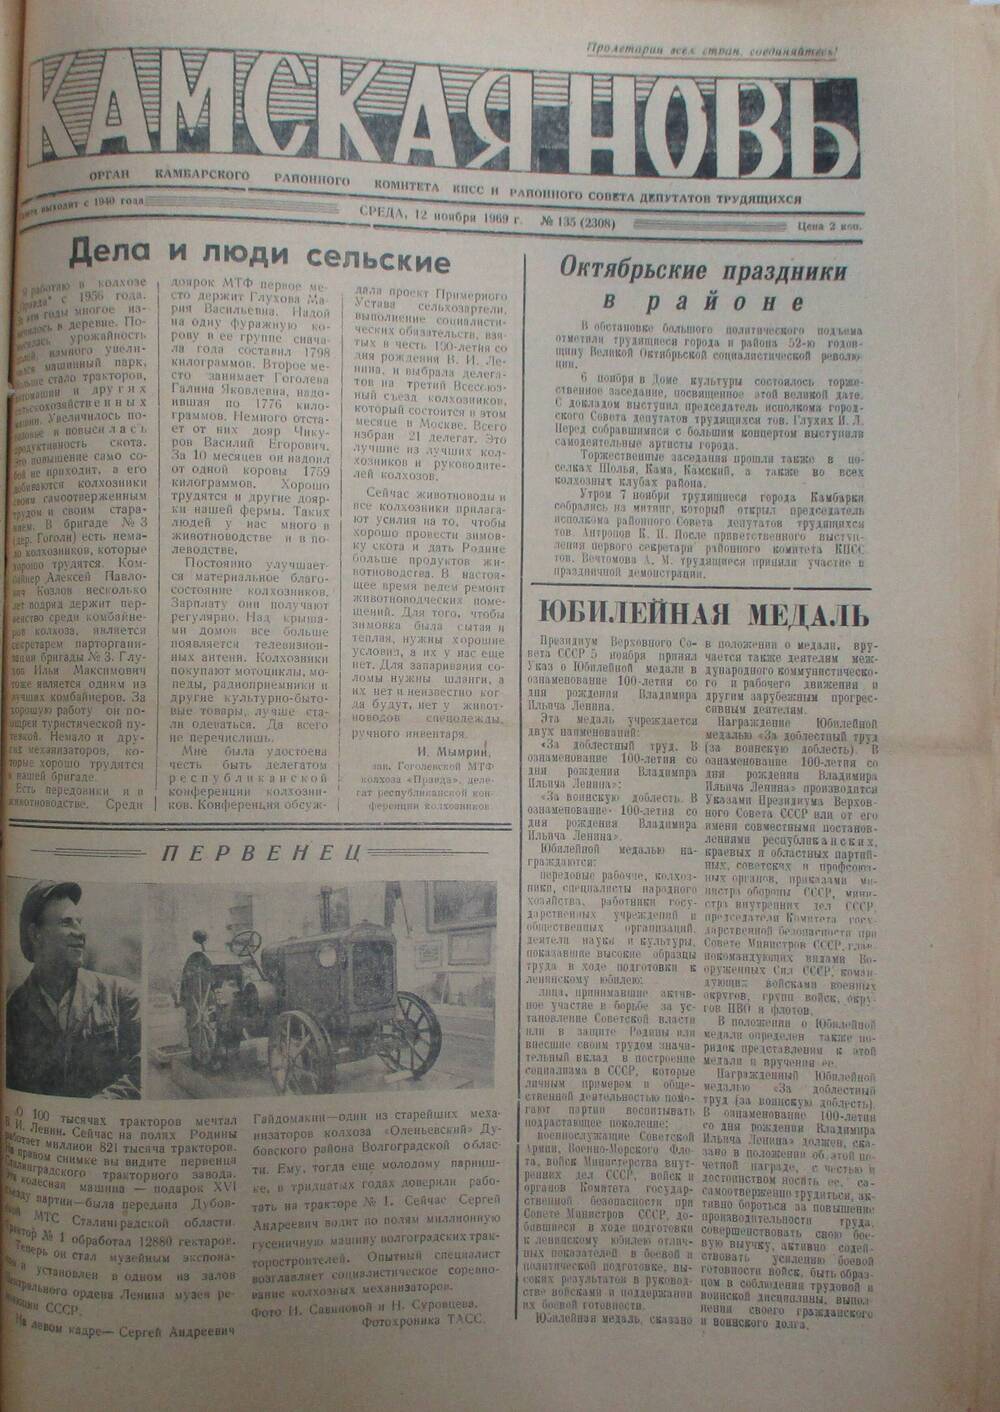 Газеты Камская новь за 1969 год, орган Камбарского райсовета и  РККПСС, с №1 по №66, с №68 по №156. №135.